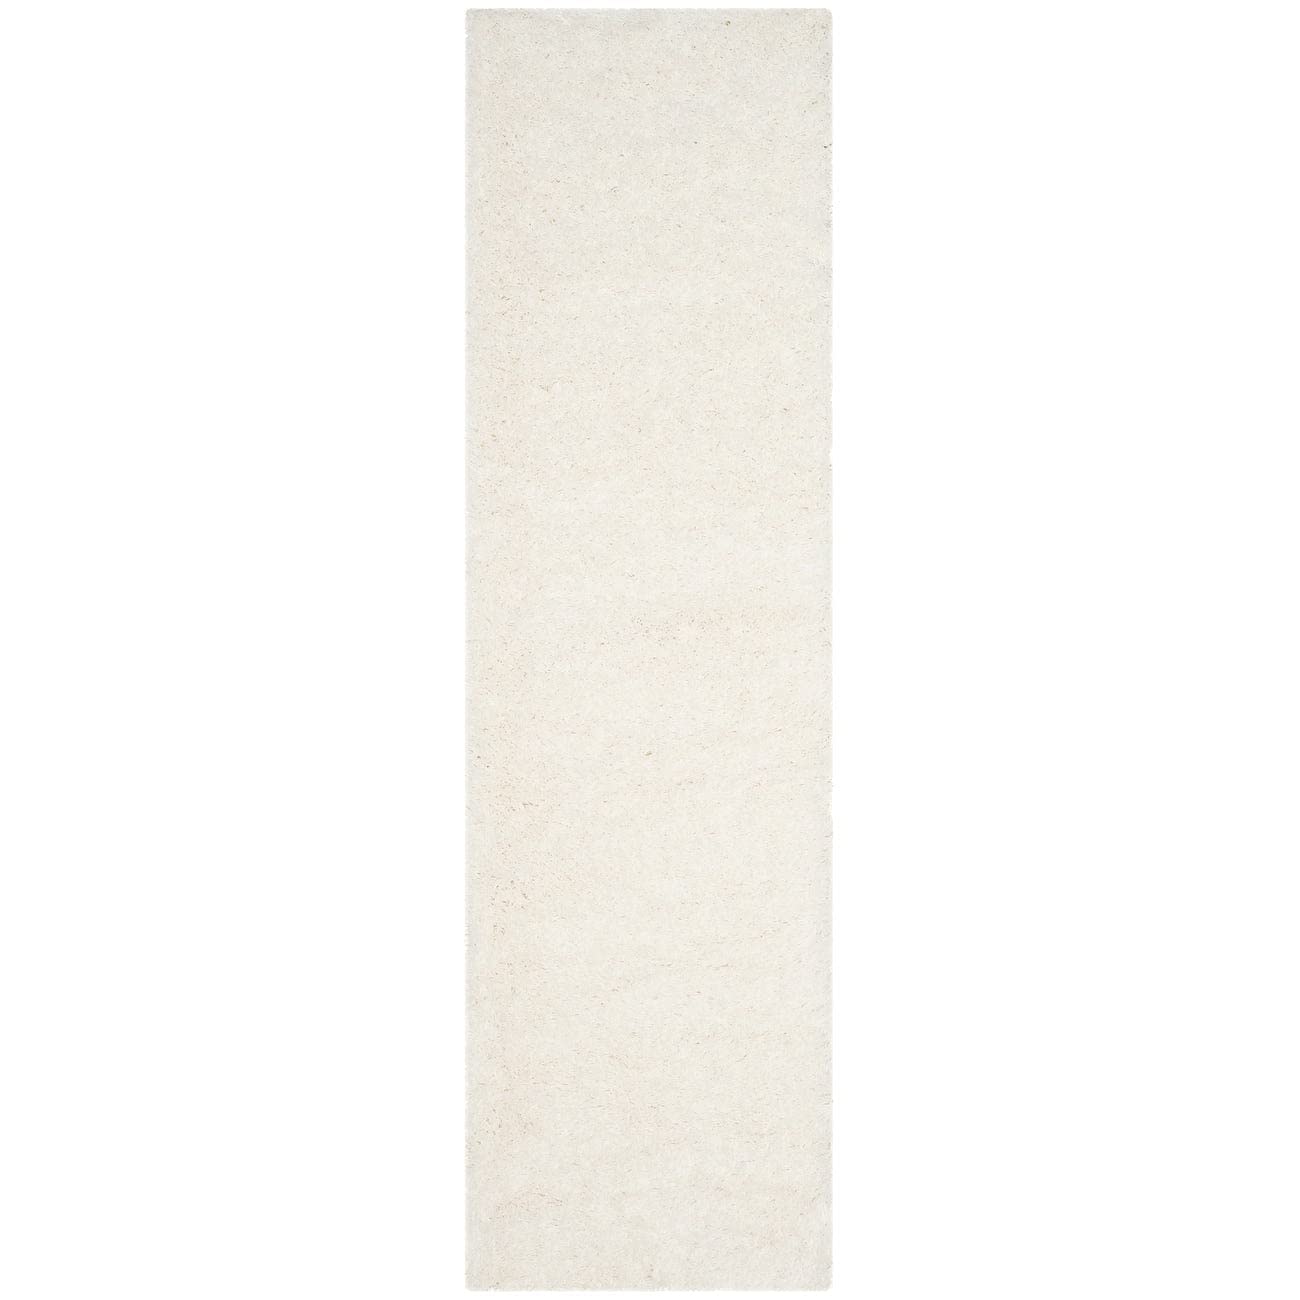 Safavieh Polar Shag 系列长条地毯 - 2'3' x 6'，白色，纯色迷人设计，不脱落且易于...